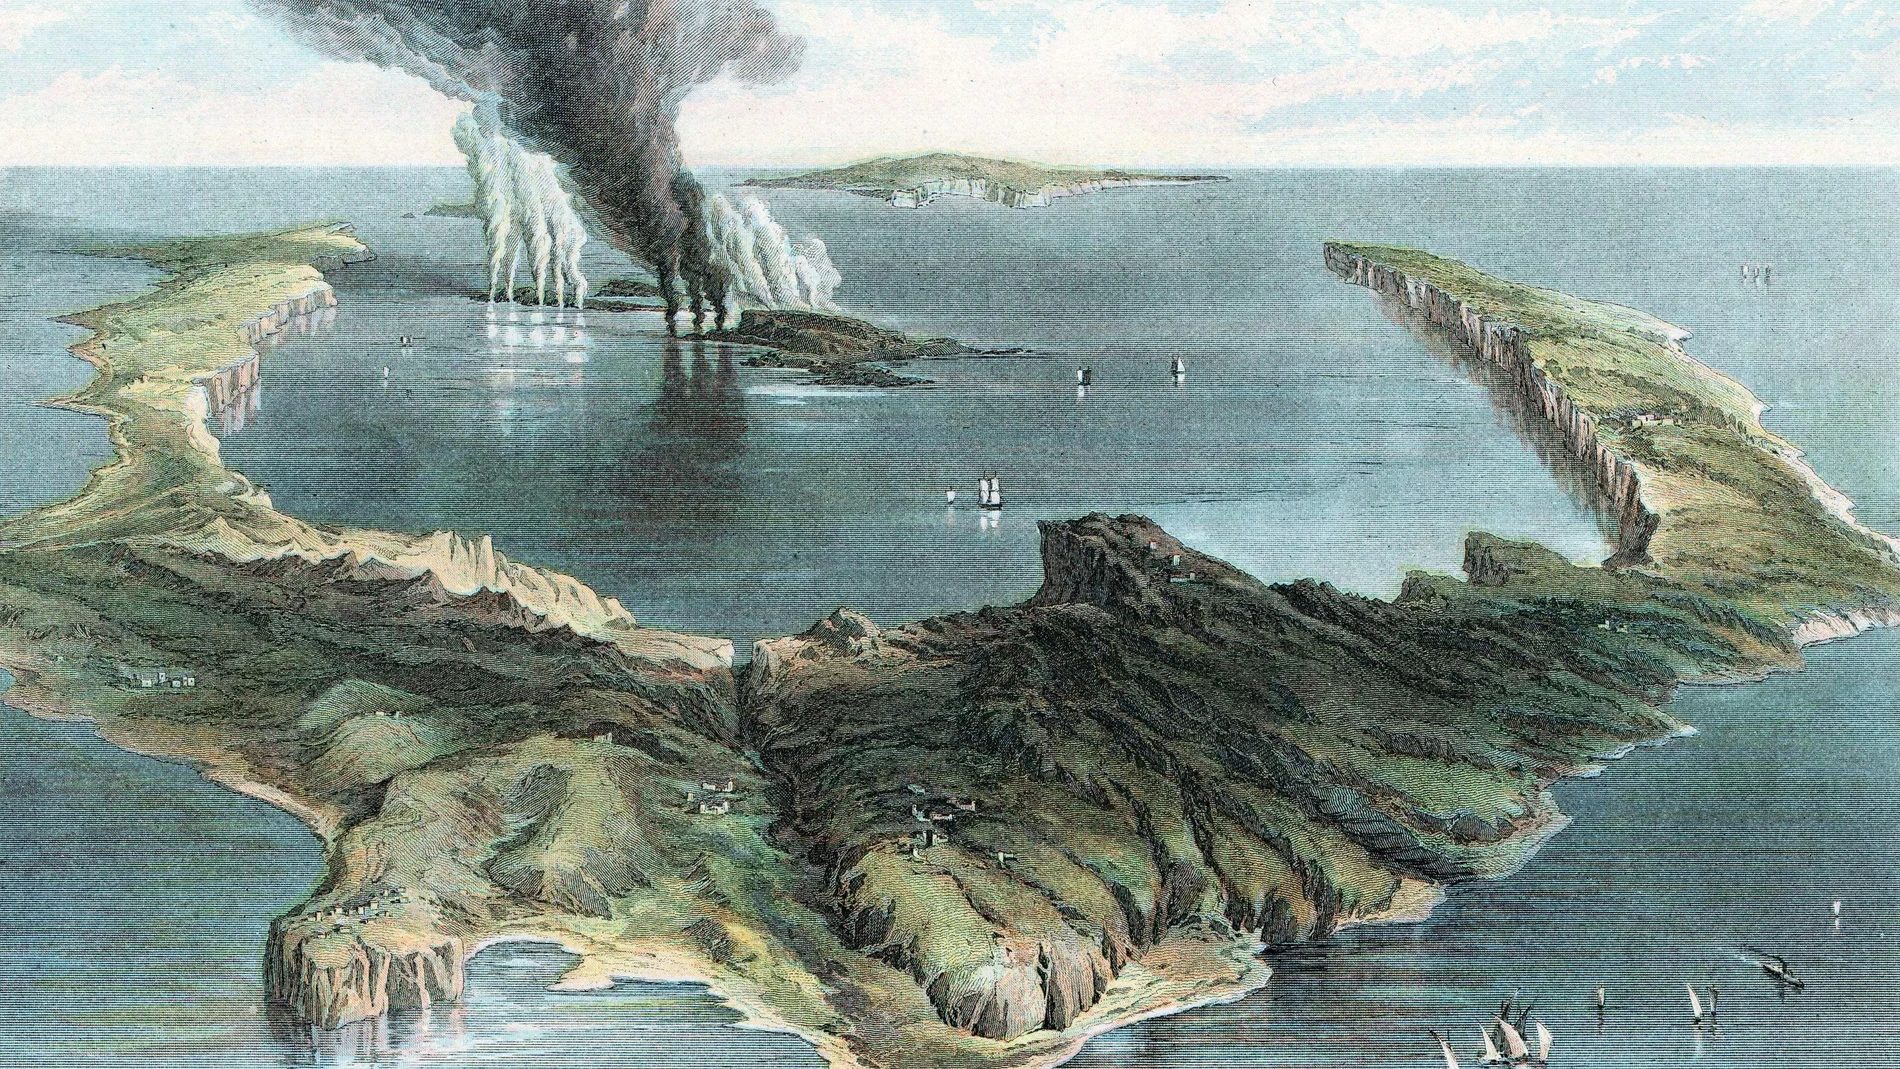 Recreación artística de Ann Ronan que ayuda a completar visualmente el episodio histórico en el que la isla de Thera (actual Santorini) quedó debastada por una erupción volcánica